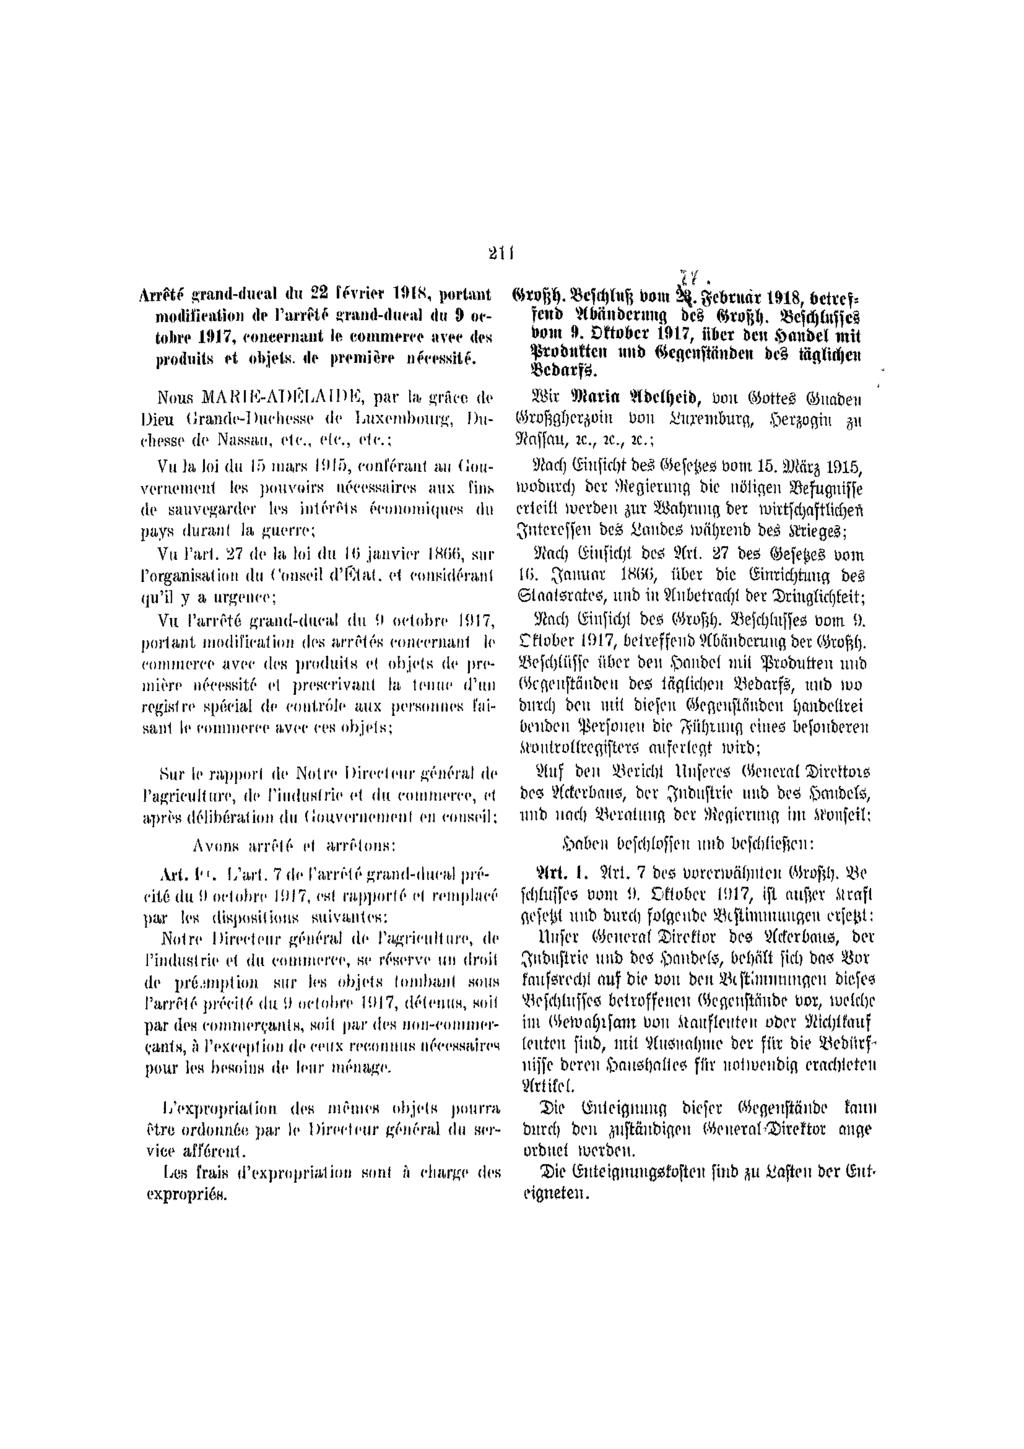 211 Arrêté grand-ducal du 22 février 1918, portant modification de l'arrêté grand-ducal du 9 octobre 1017, concernant le commerce avec des produits et objets, de première nécessité.